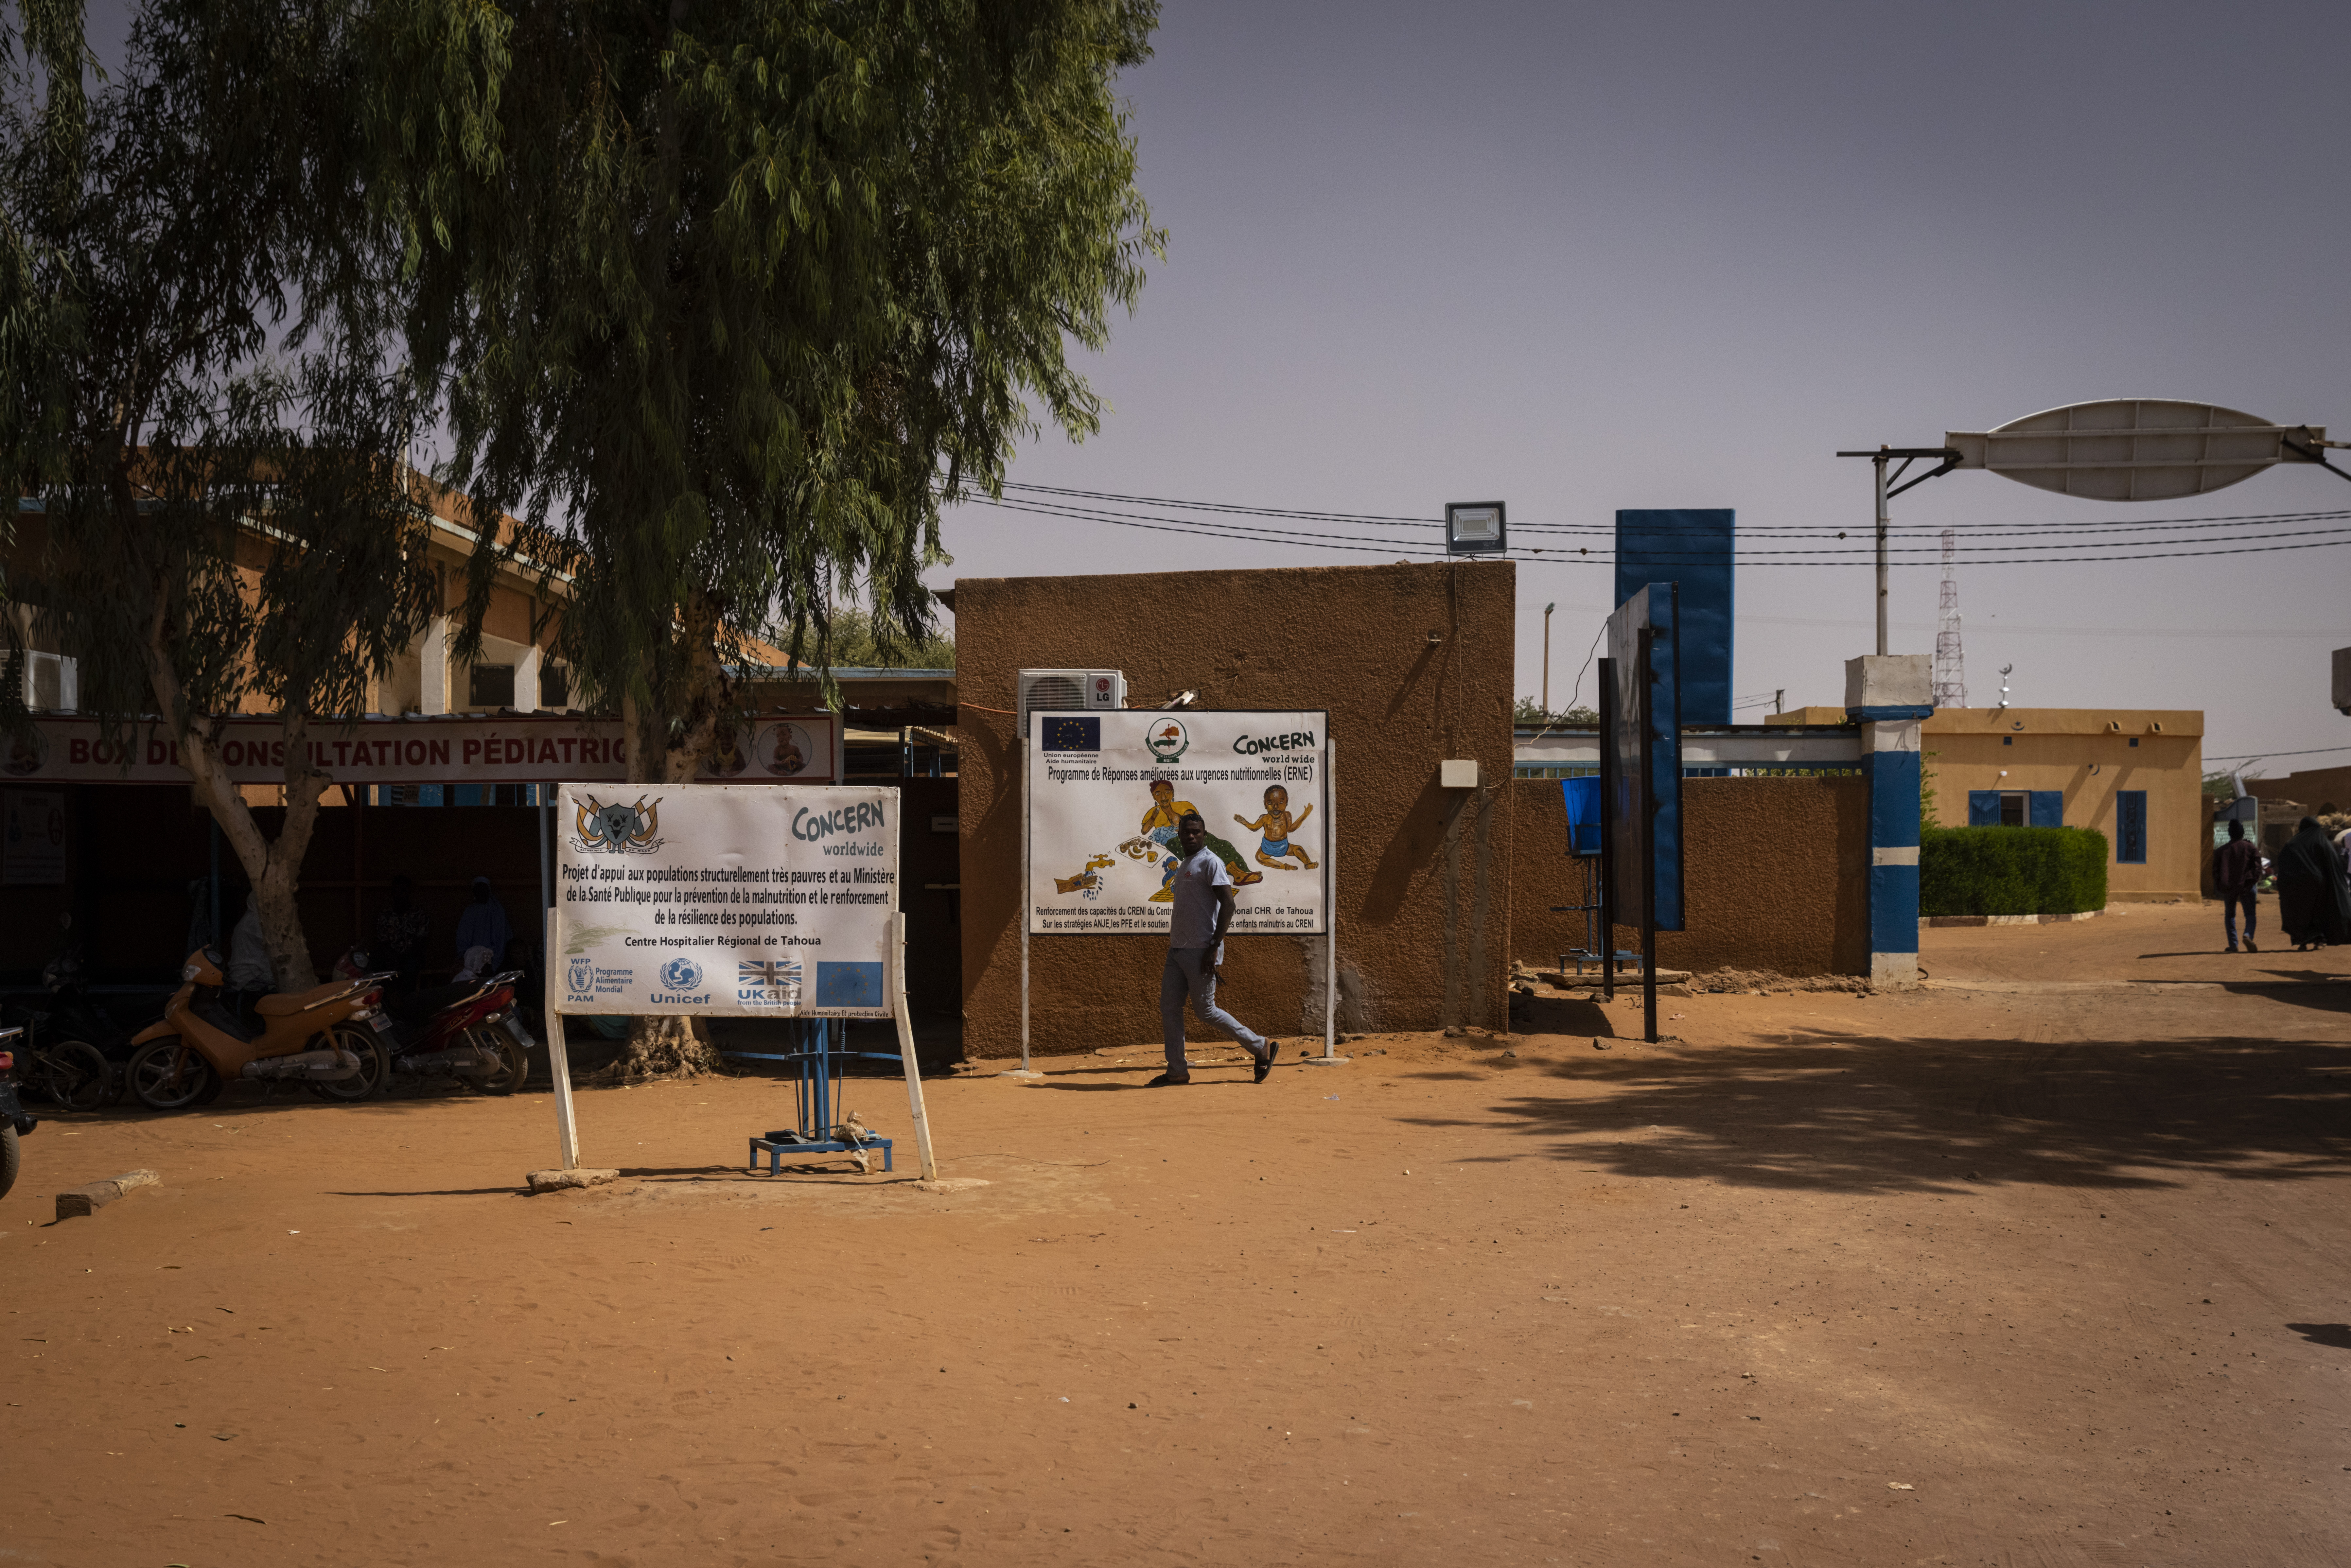 Concern Worldwide health center in Niger